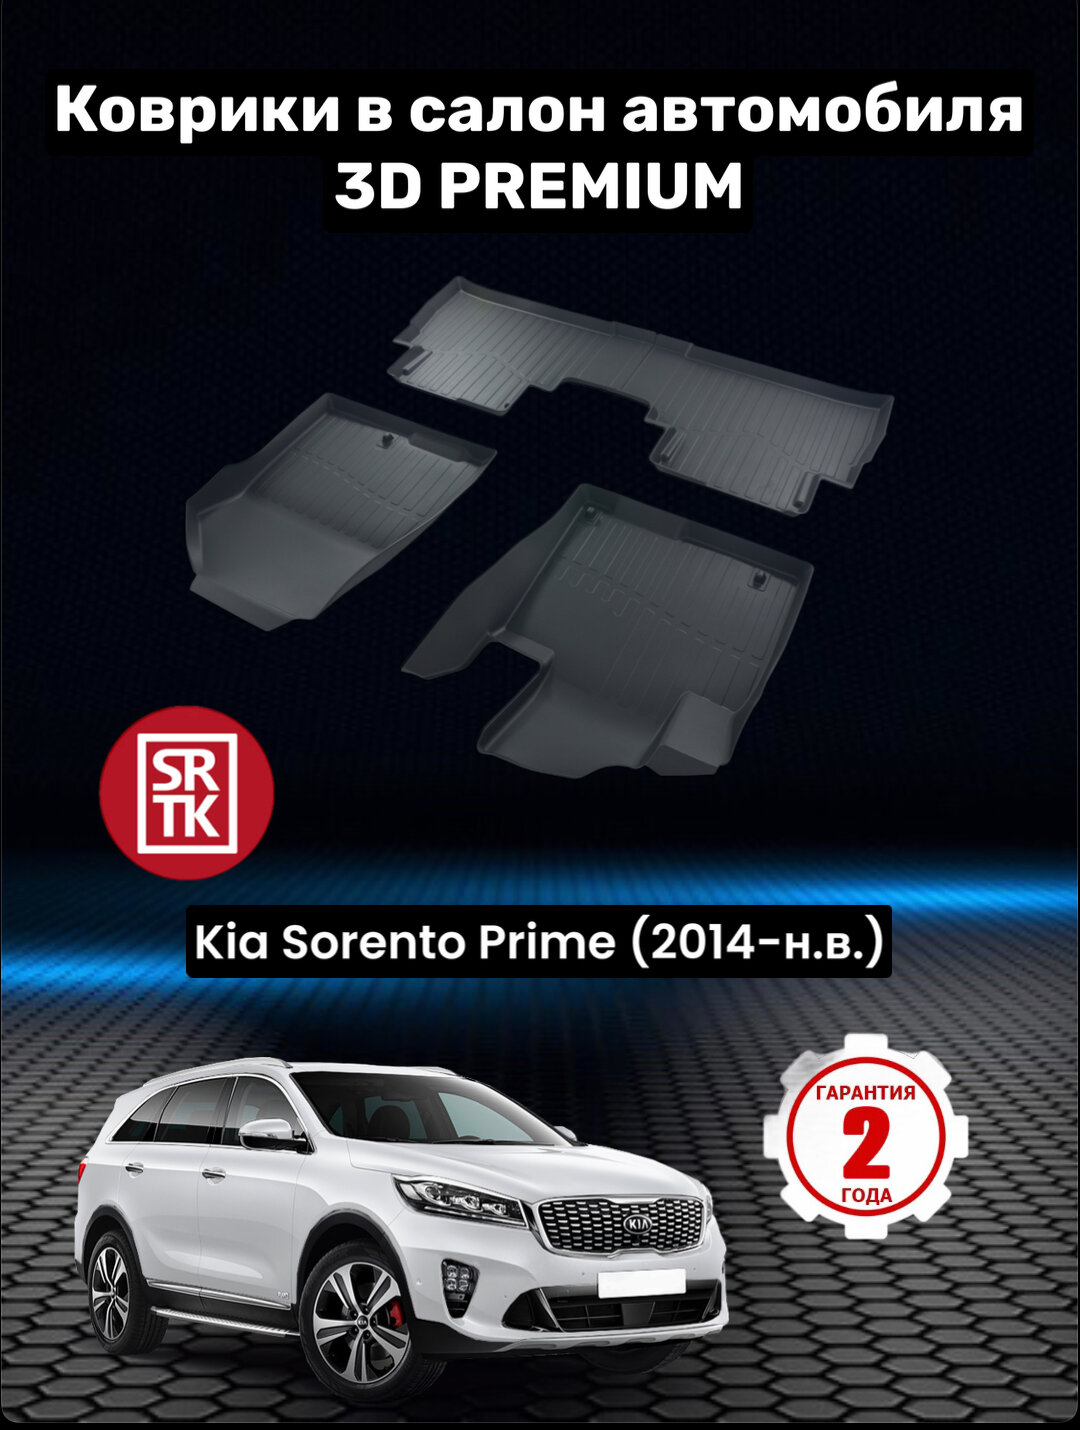 Коврики резиновые в салон для Киа Соренто Прайм/ Kia Sorento Prime (2014-н. в.) 3D PREMIUM SRTK (Саранск) комплект в салон